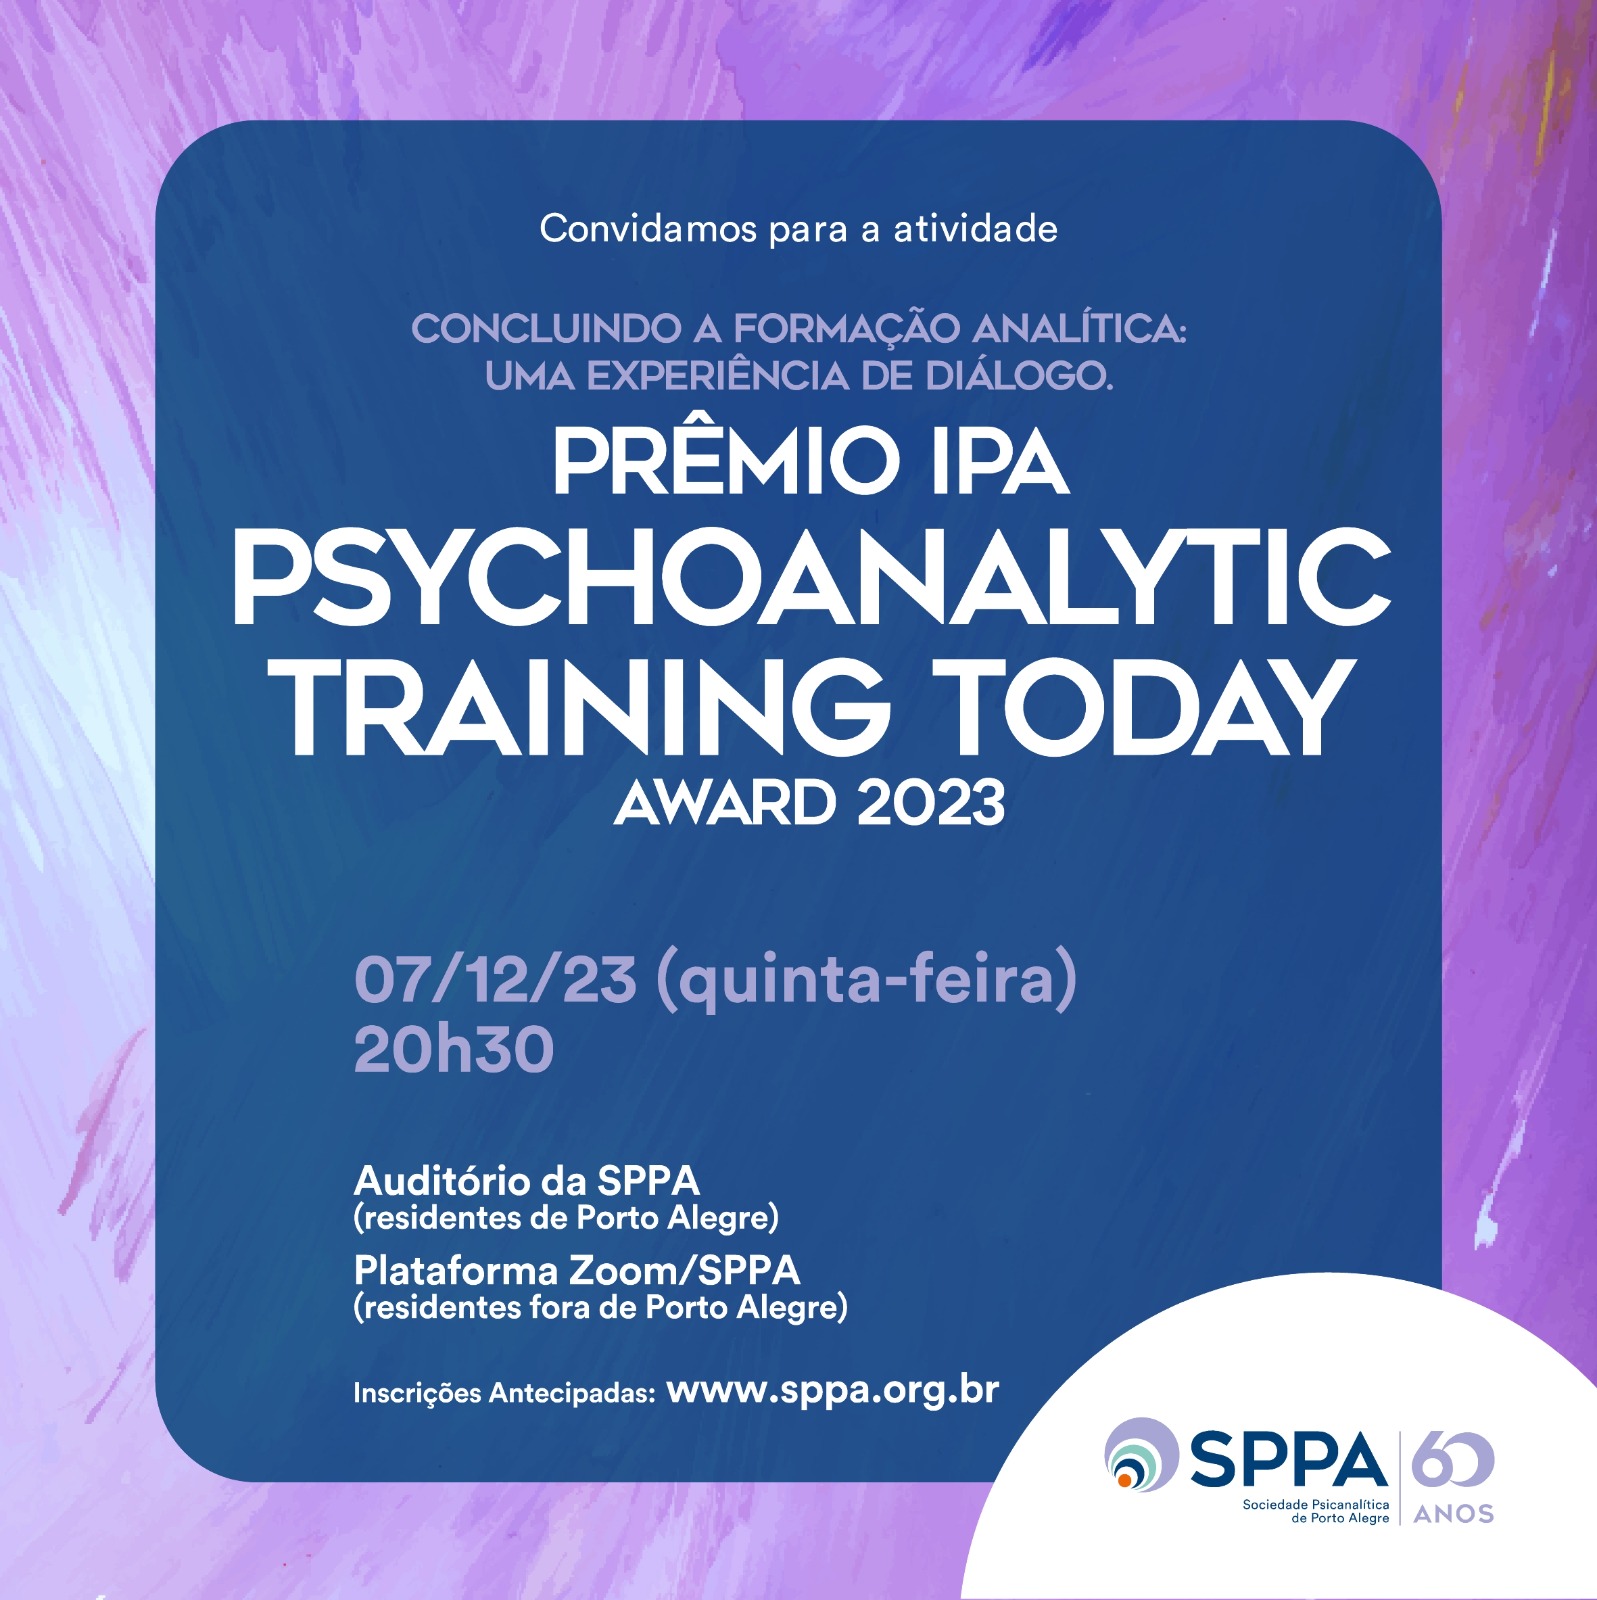 Concluindo a formação analítica: uma experiência de diálogo. Prêmio IPA “Psychoanalytic Training Today Award 2023”